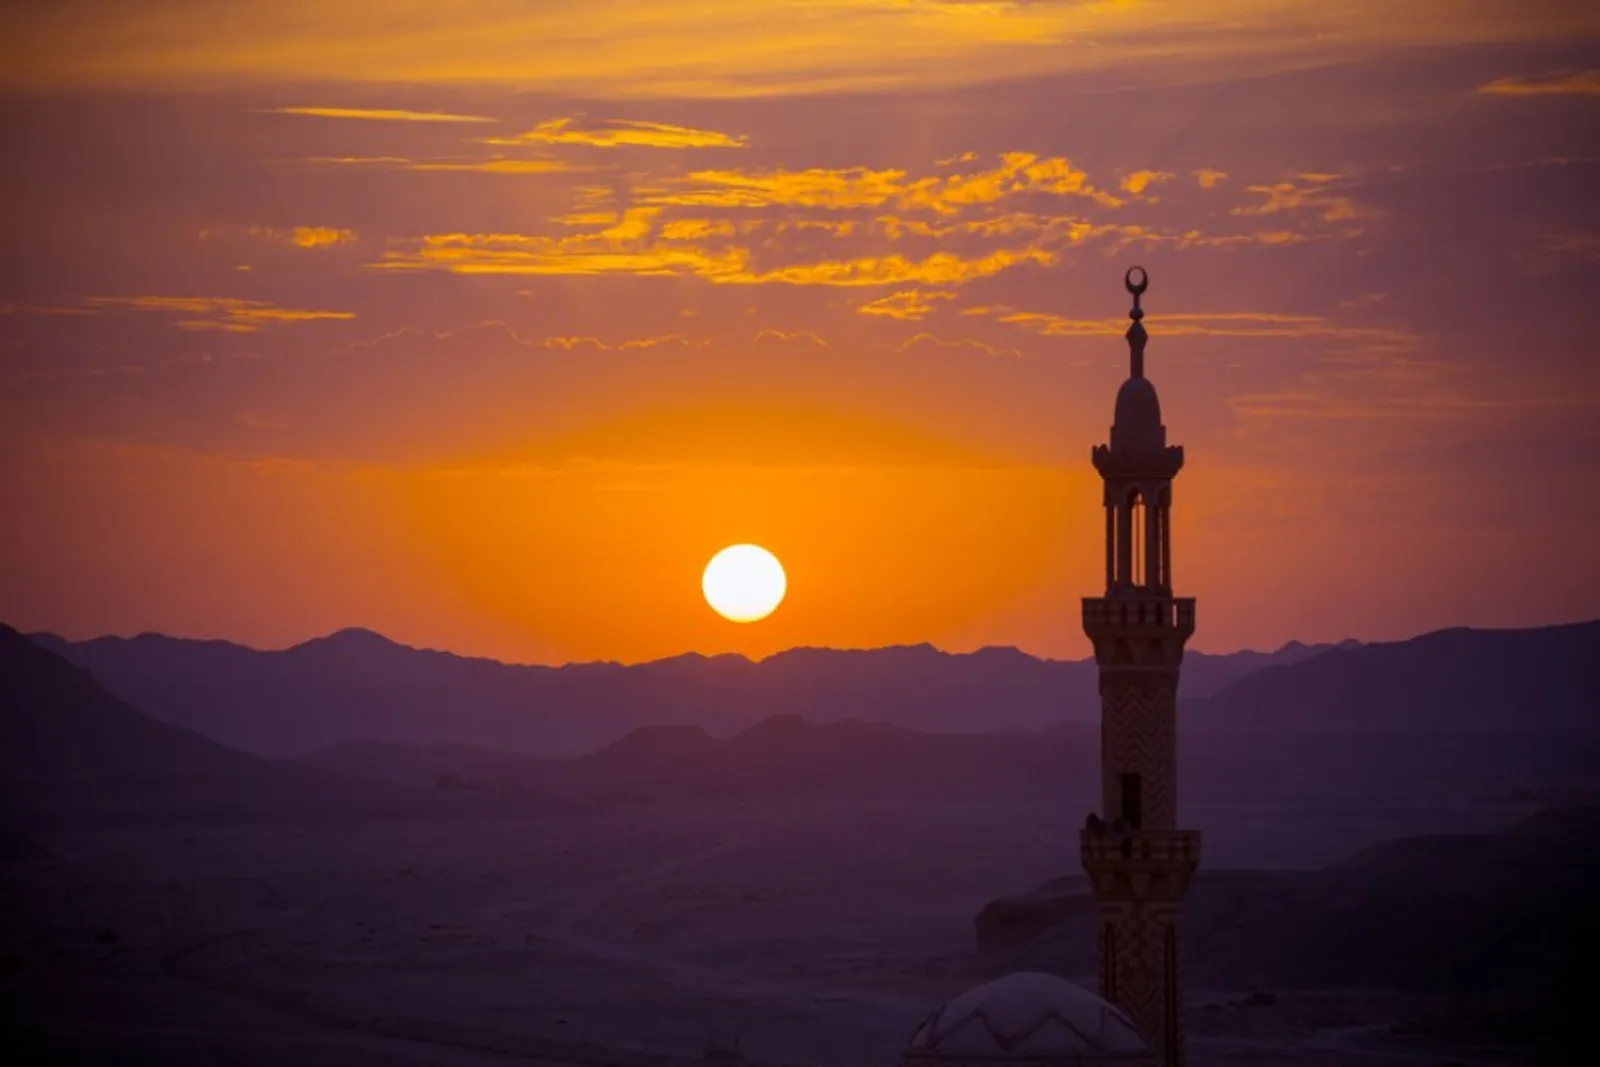 Ramadan Kareem Artinya Apa? Ini Penjelasan Maknanya